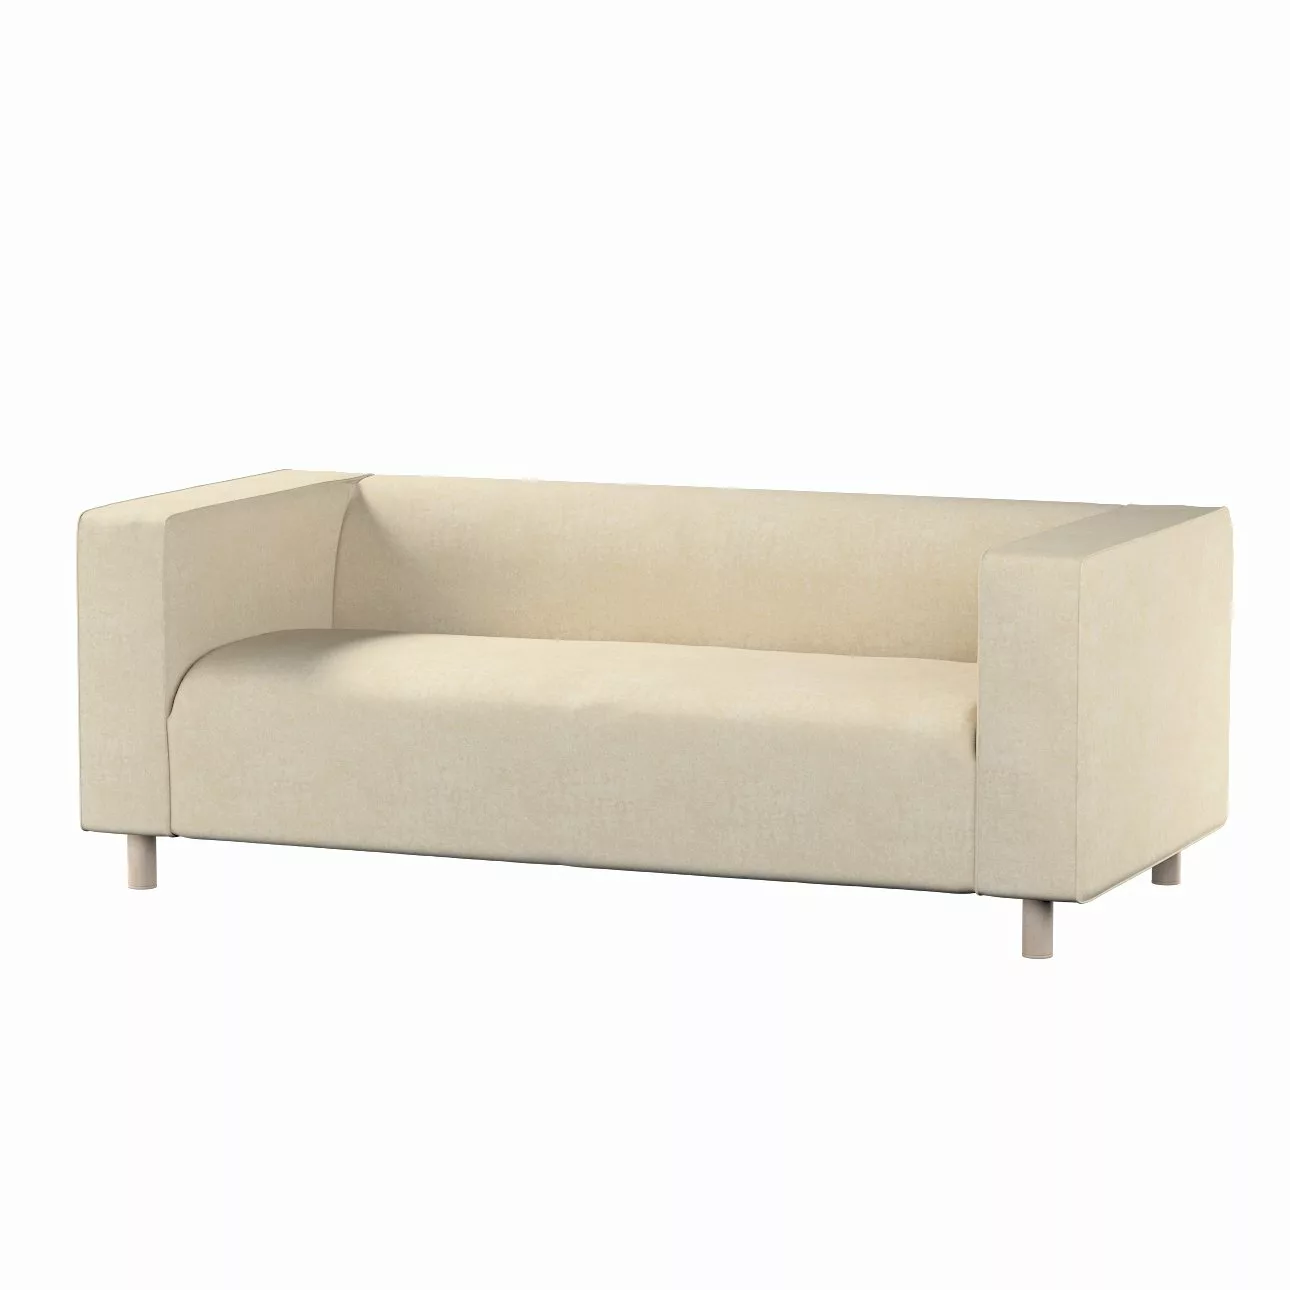 Bezug für Klippan 2-Sitzer Sofa, grau-beige, Sofahusse, Klippan 2-Sitzer, C günstig online kaufen